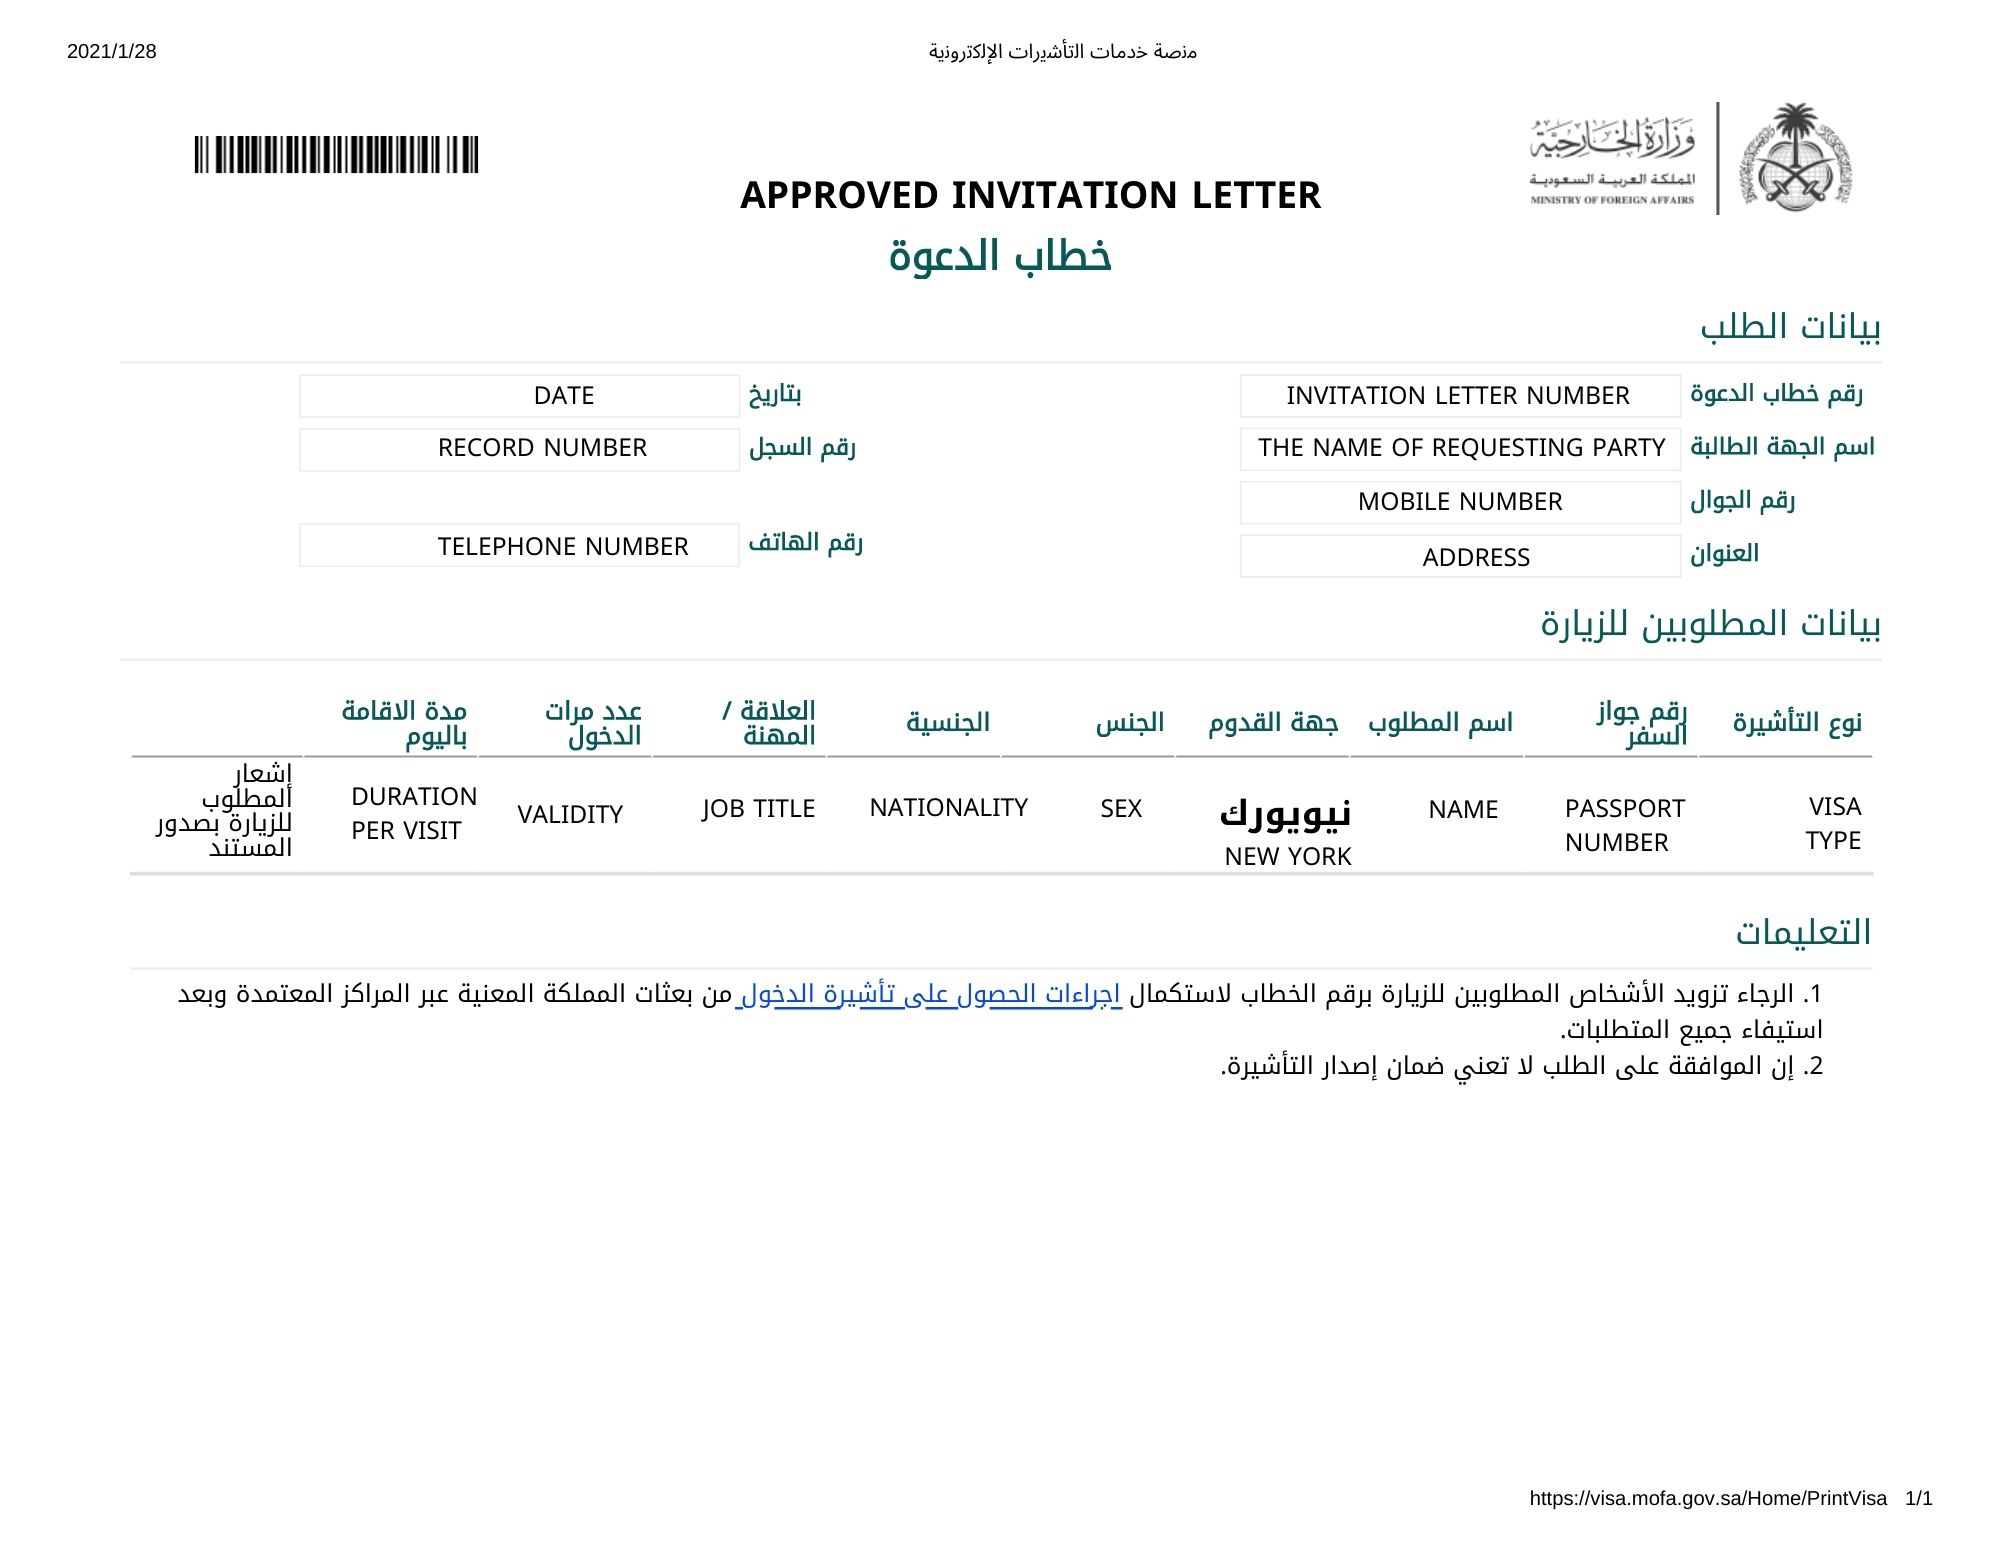 personal visit visa saudi arabia fees